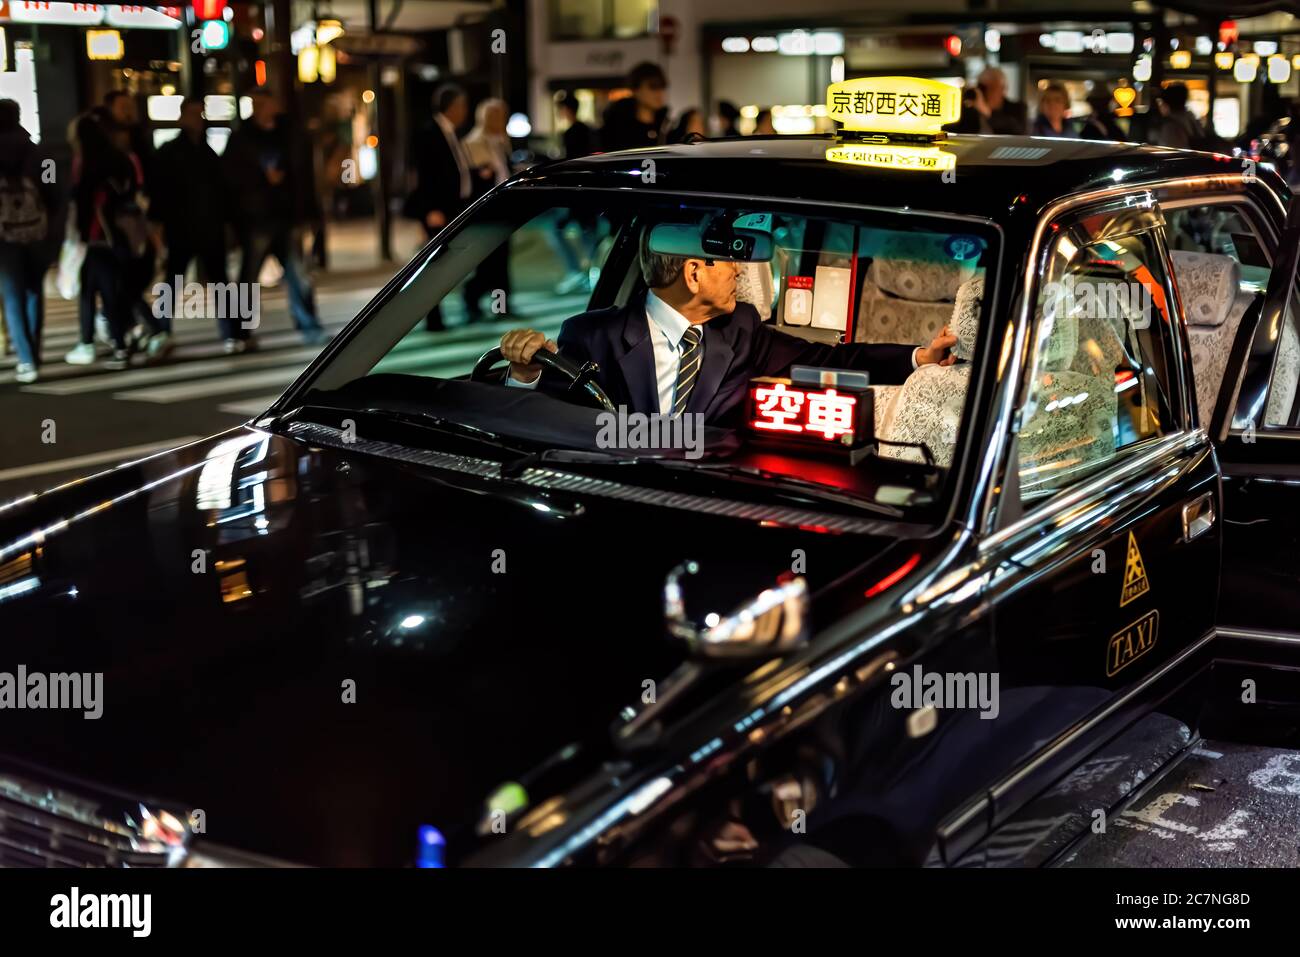 Kyoto, Japon - 9 avril 2019 : rue Gion avec bâtiments éclairés bokeh nuit colorée et taxi noir dans la circulation avec chauffeur à l'intérieur Banque D'Images